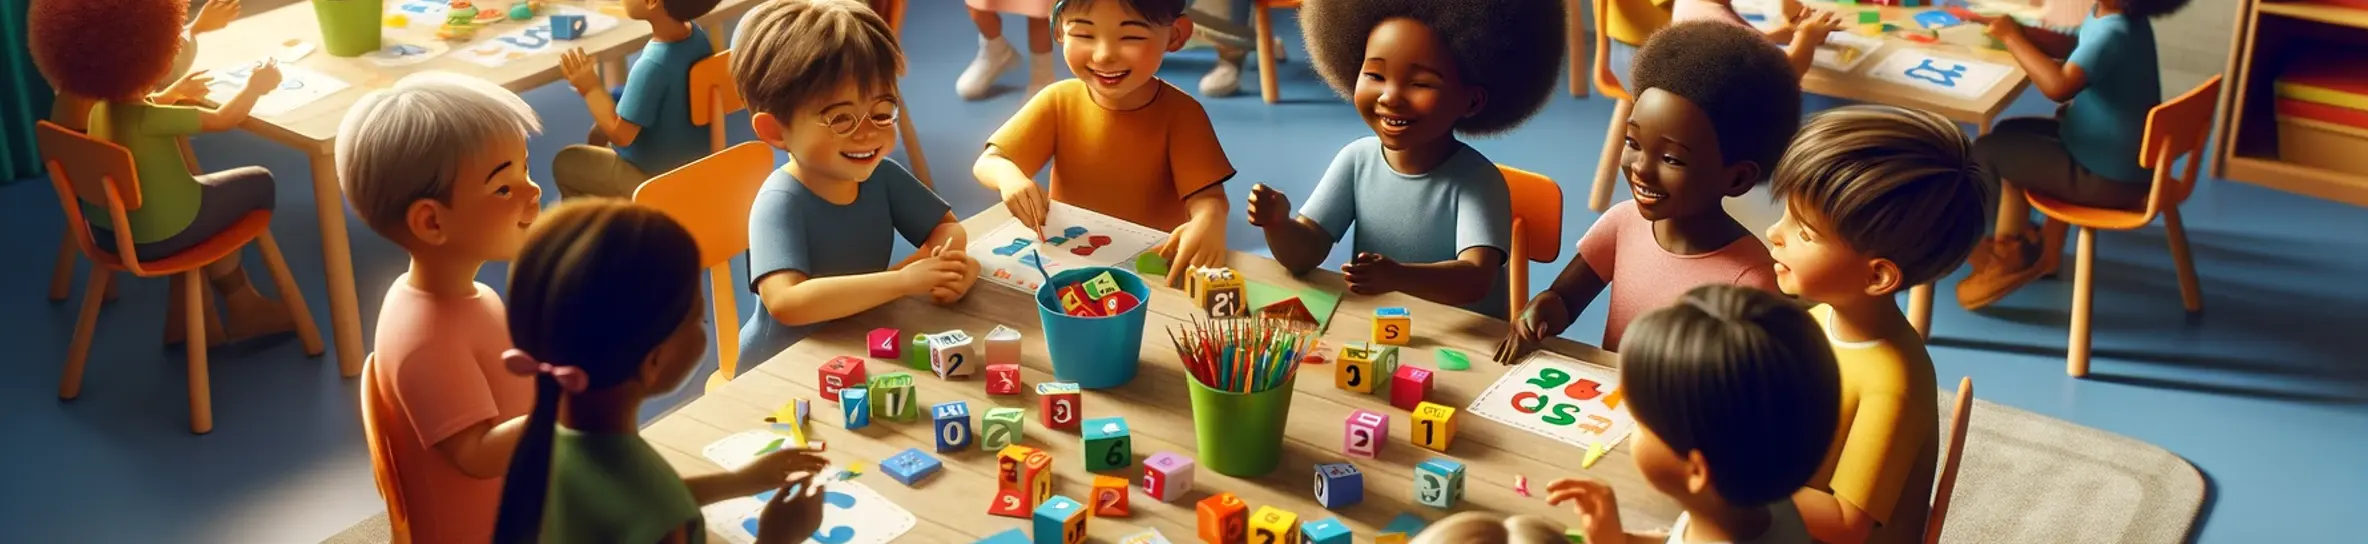 Les enfants de 3 à 4 ans apprennent à construire les nombres 1, 2 et 3 en maternelle ps 